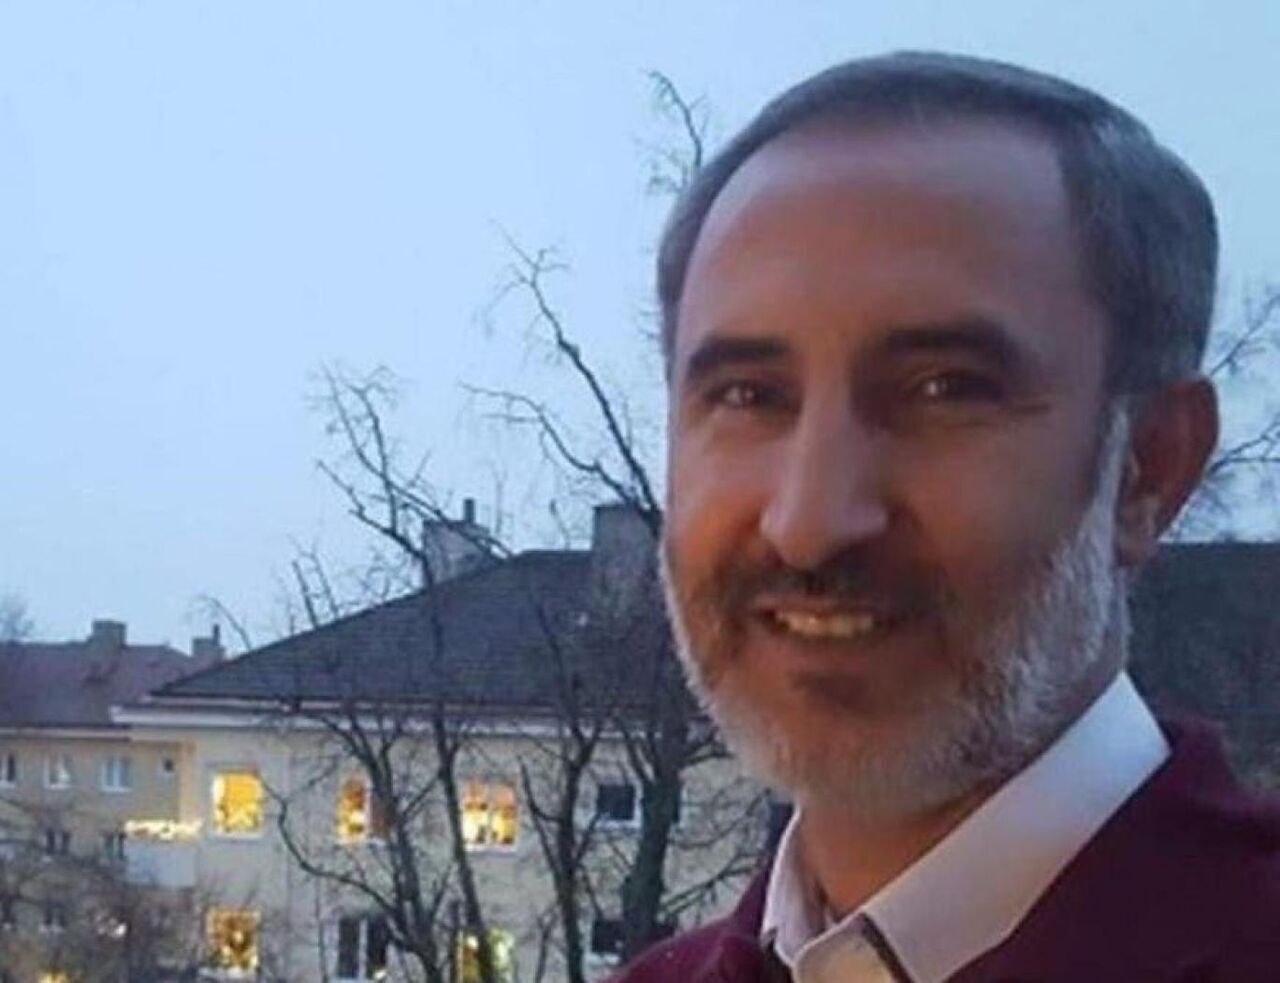 La Suède intensifie les restrictions sur un ressortissant iranien détenu en prison